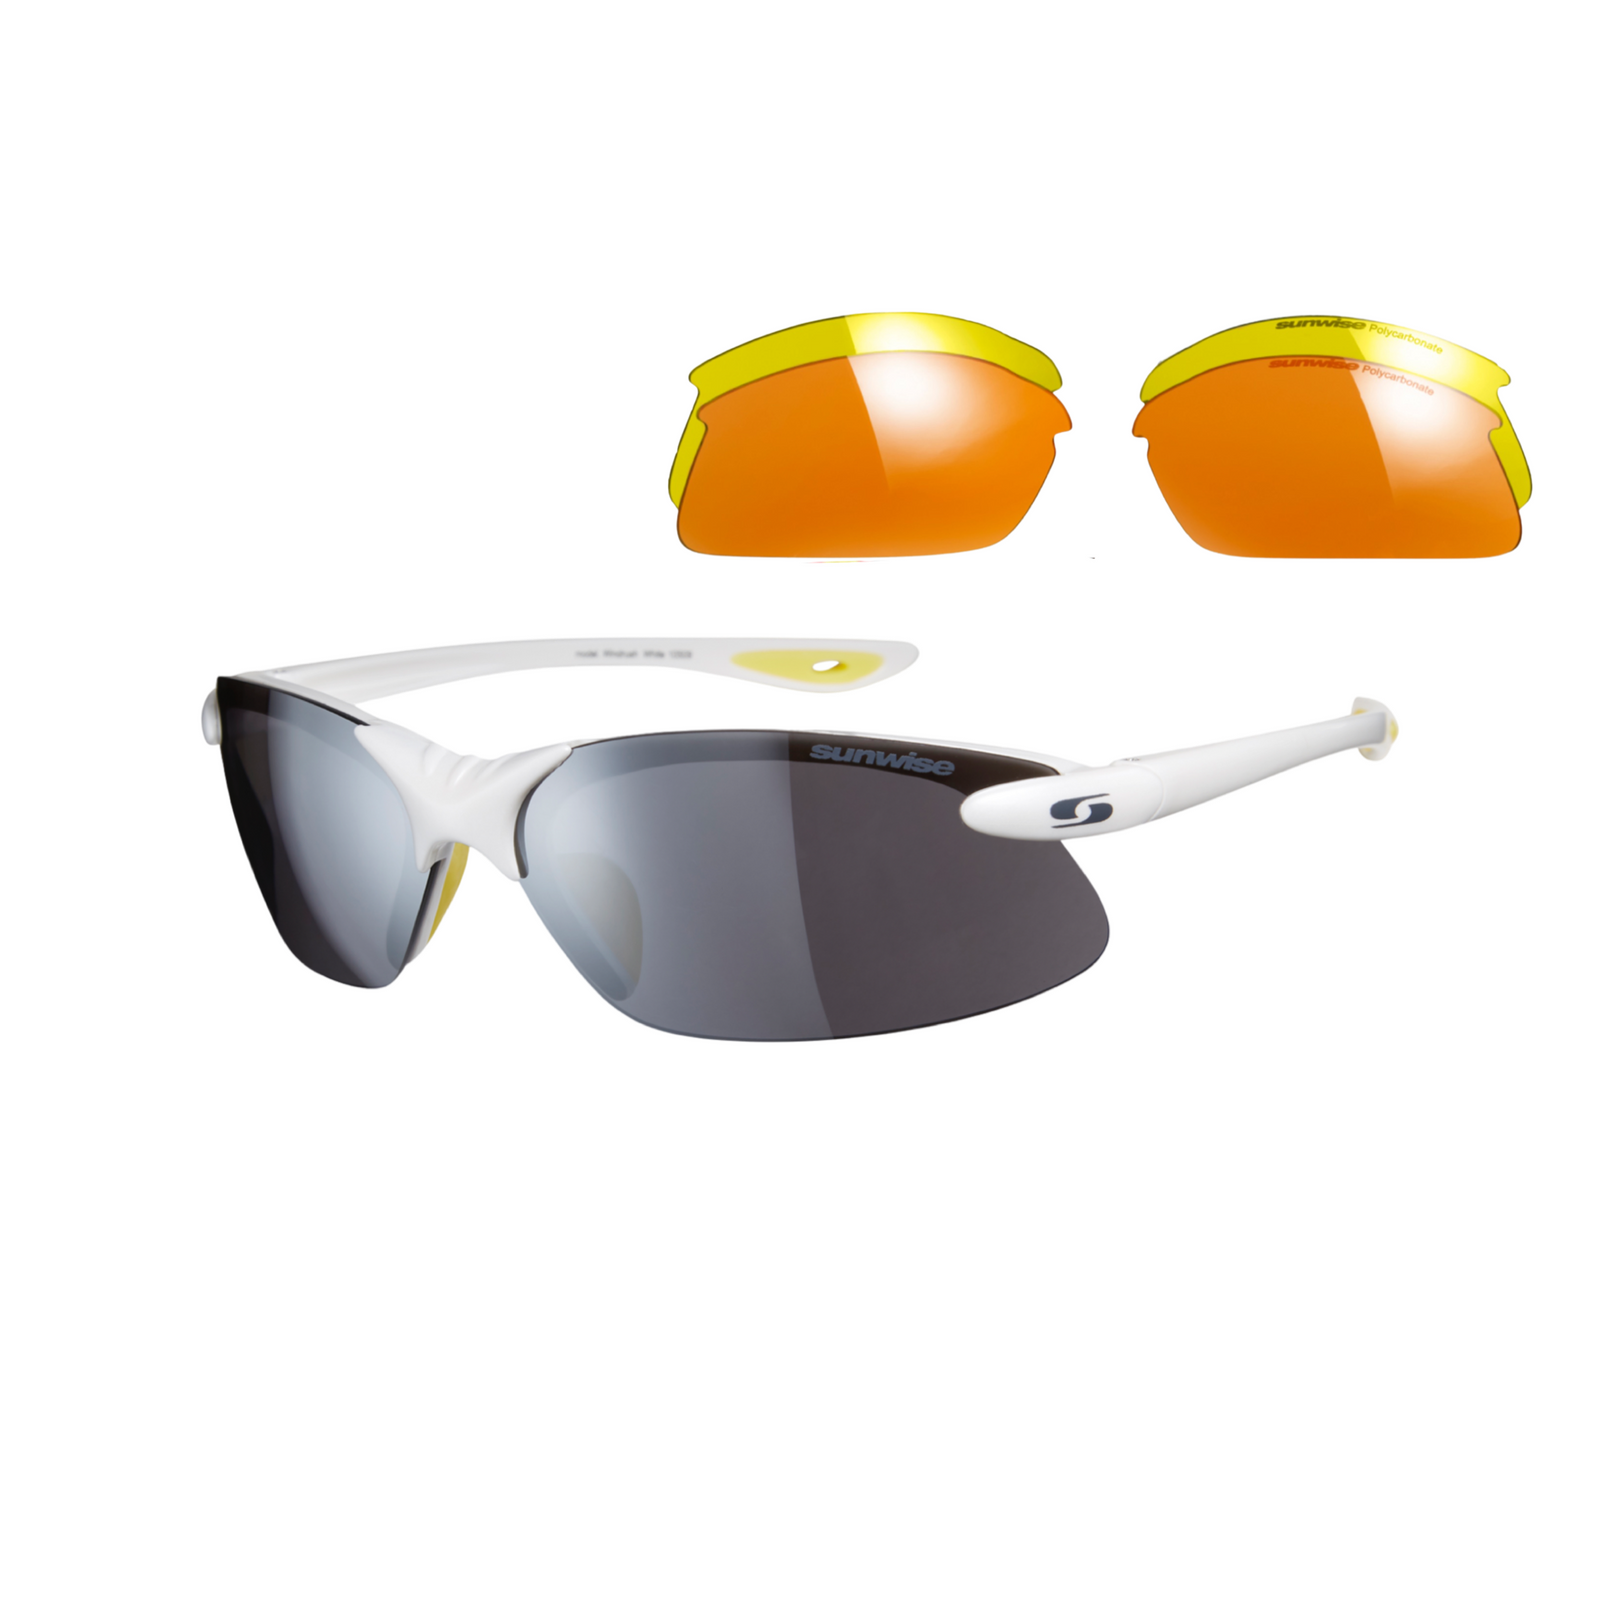 Gafas de sol deportivas Windrush con lentes intercambiables - 6 colores